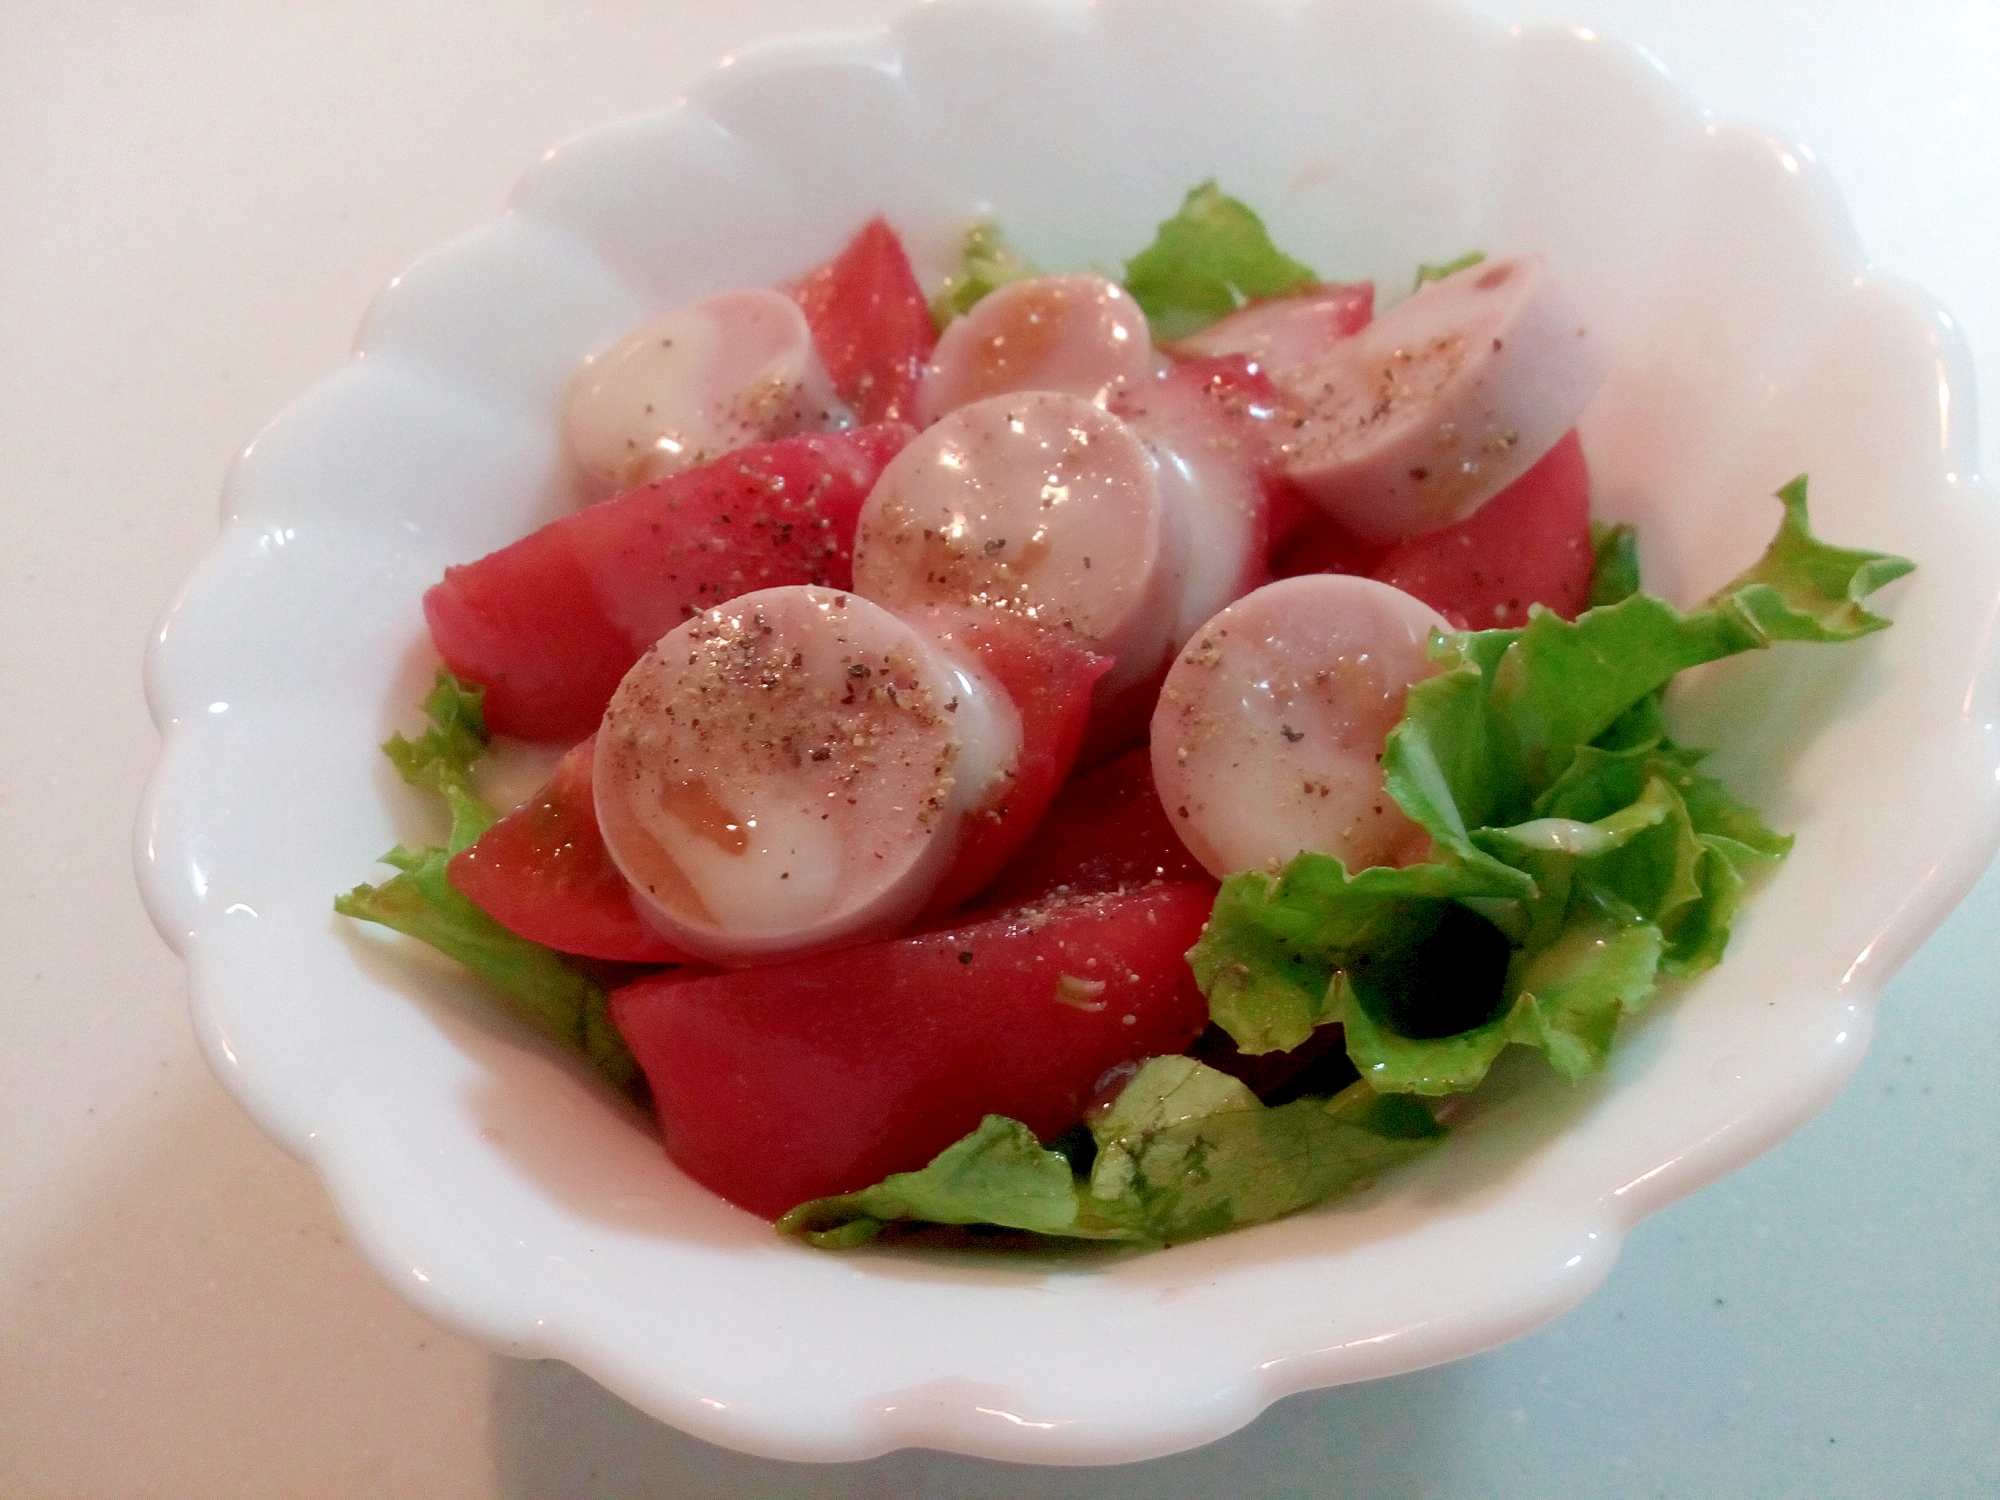 レタス・トマト・魚ニソの玉ドレシーザーサラダ